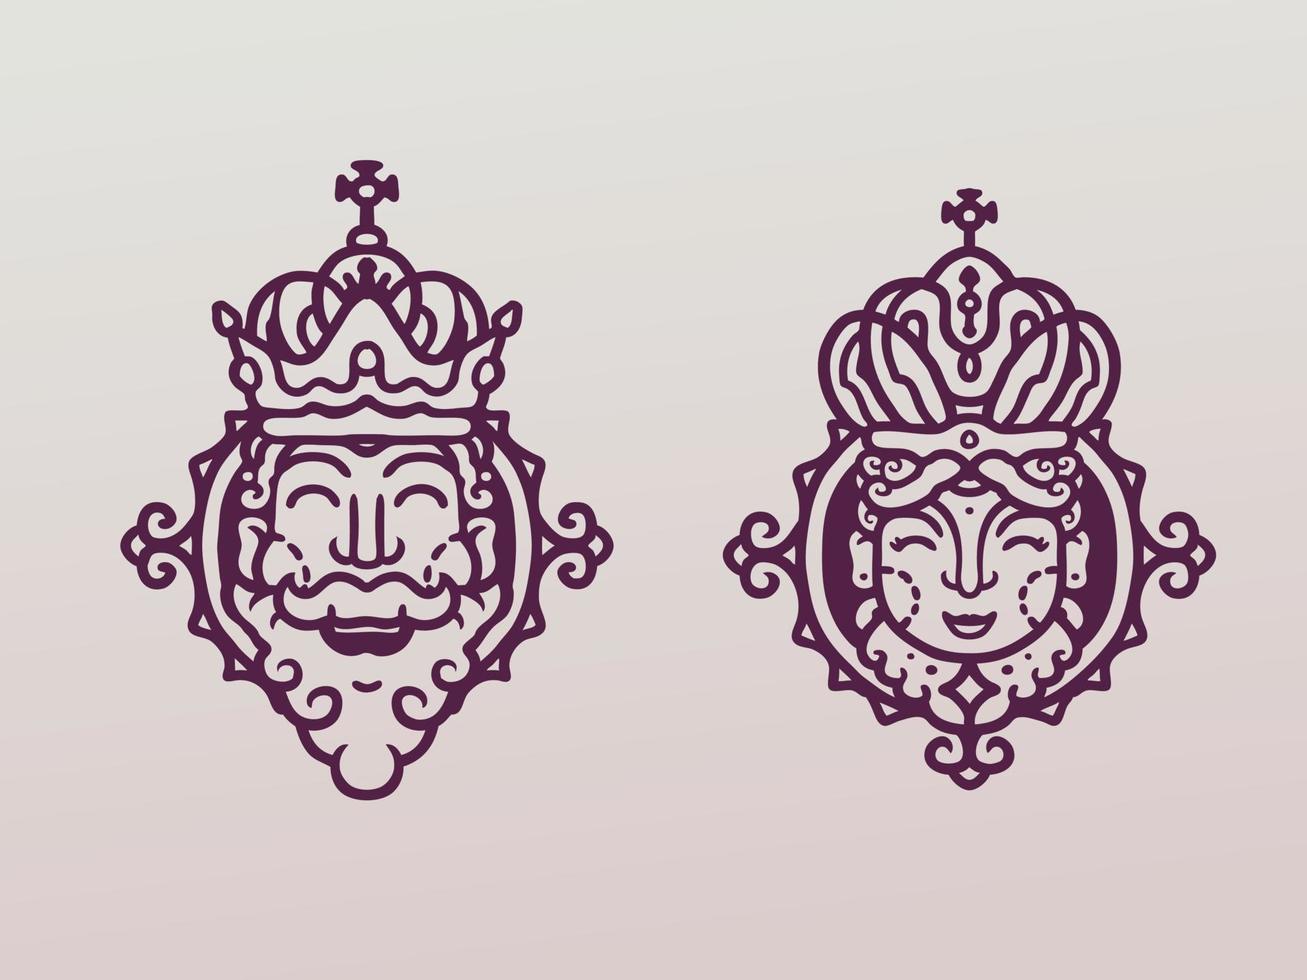 le roi et la reine monoline illustration vecteur